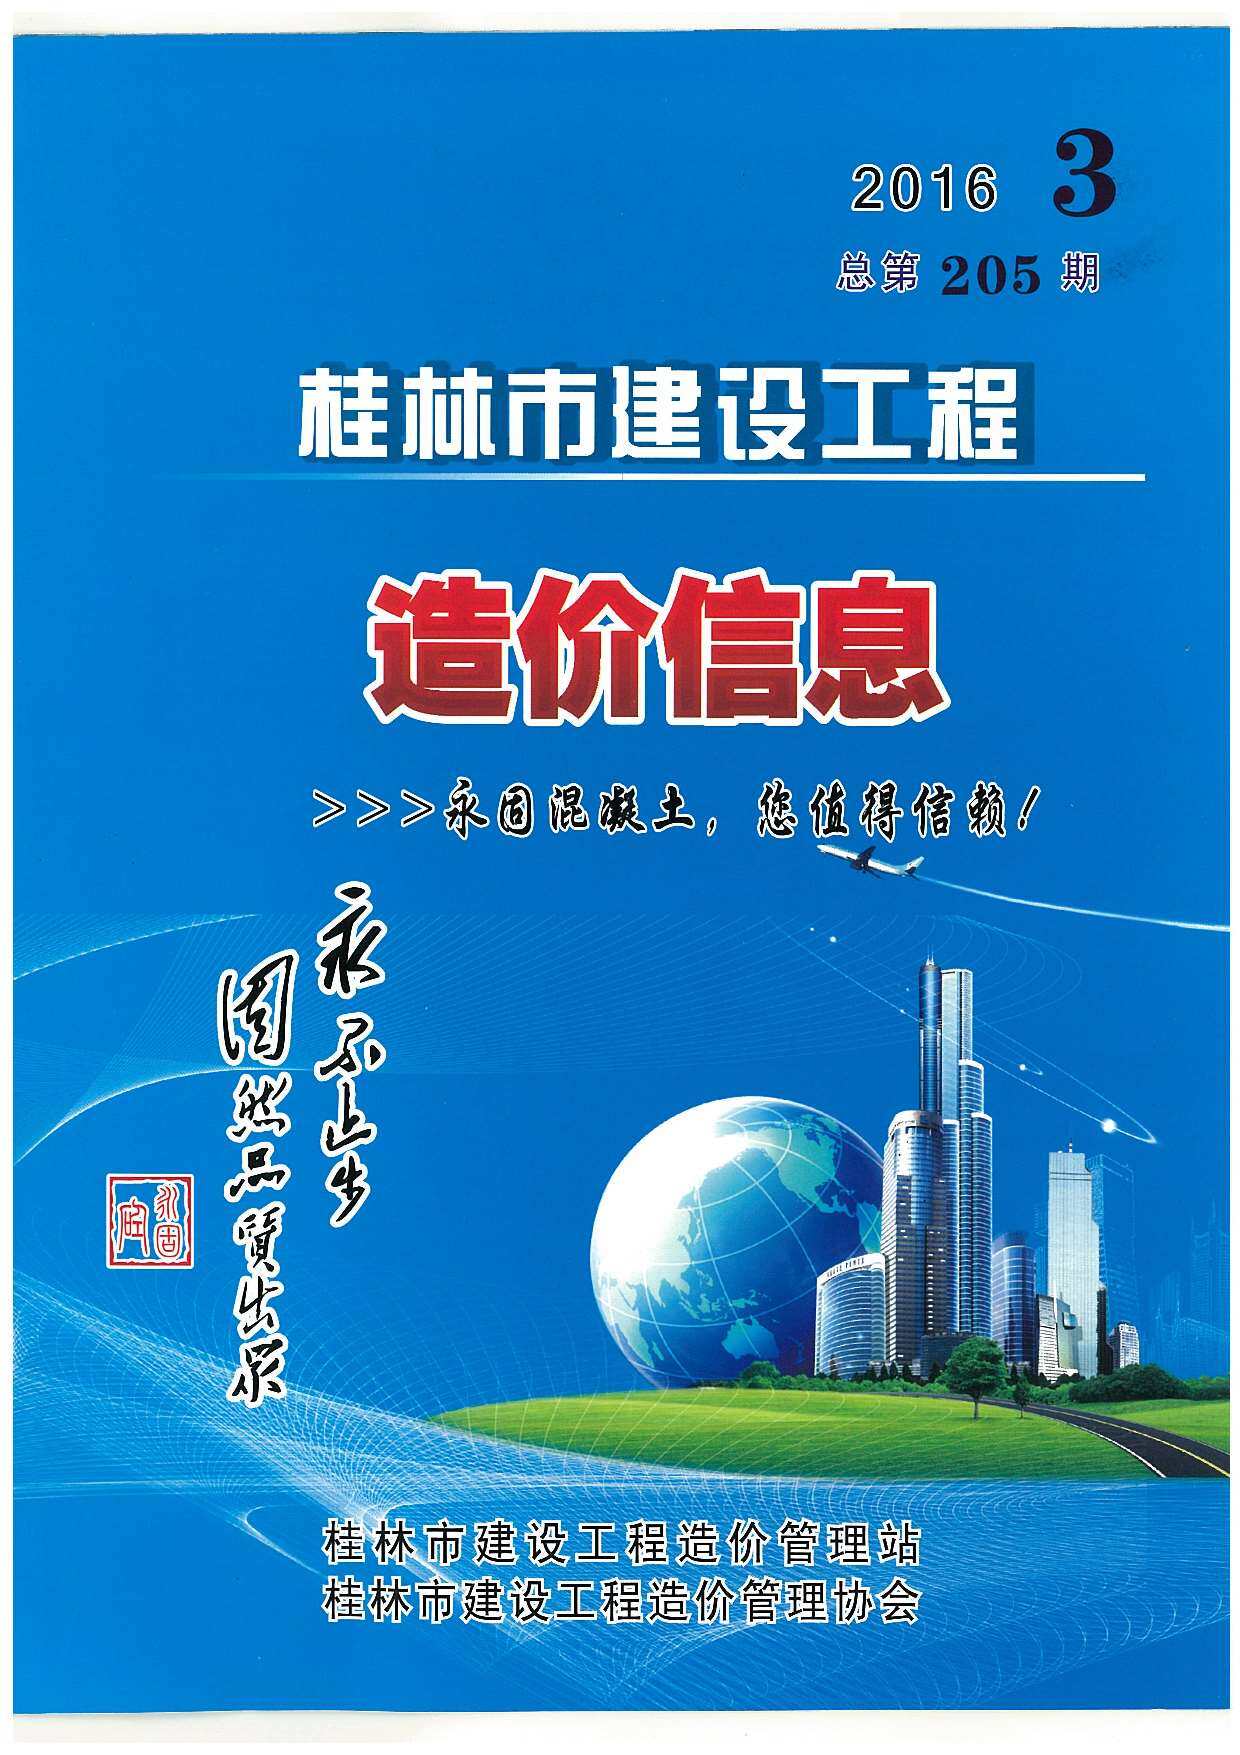 桂林市2016年3月工程造价信息期刊